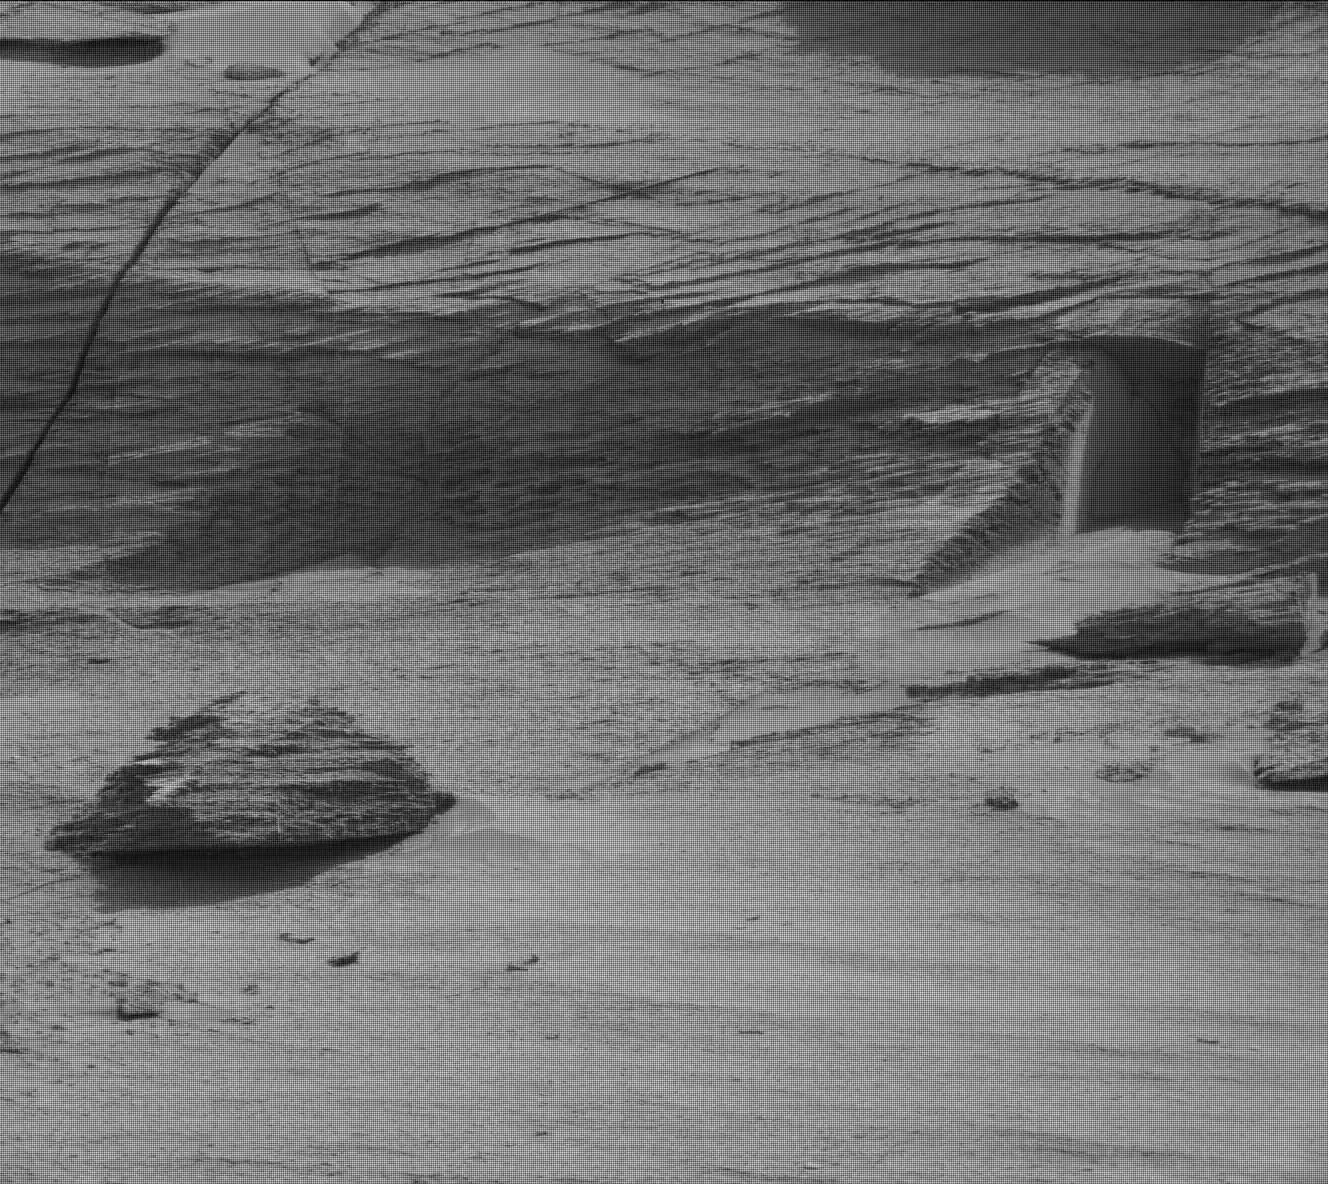 Sol 3466: Auf Mars 2 wurde ein Eingang zu einem geheimen unterirdischen Tunnel gefunden